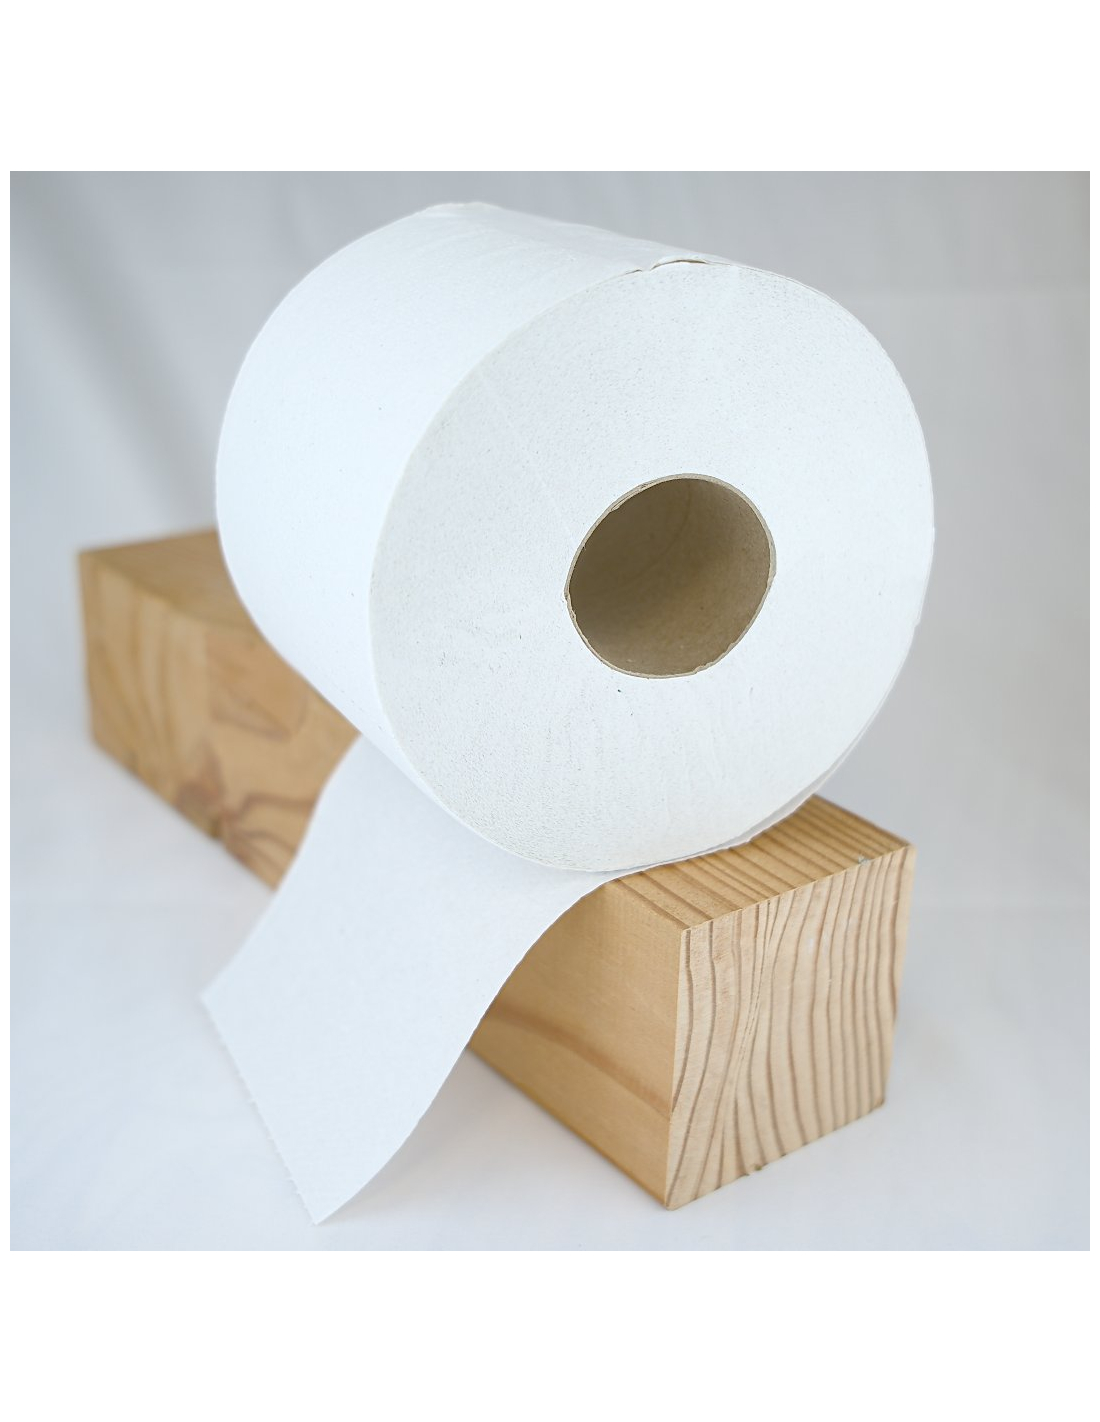 Papier toilette lavable - zoessentiels - boutique zero dechet